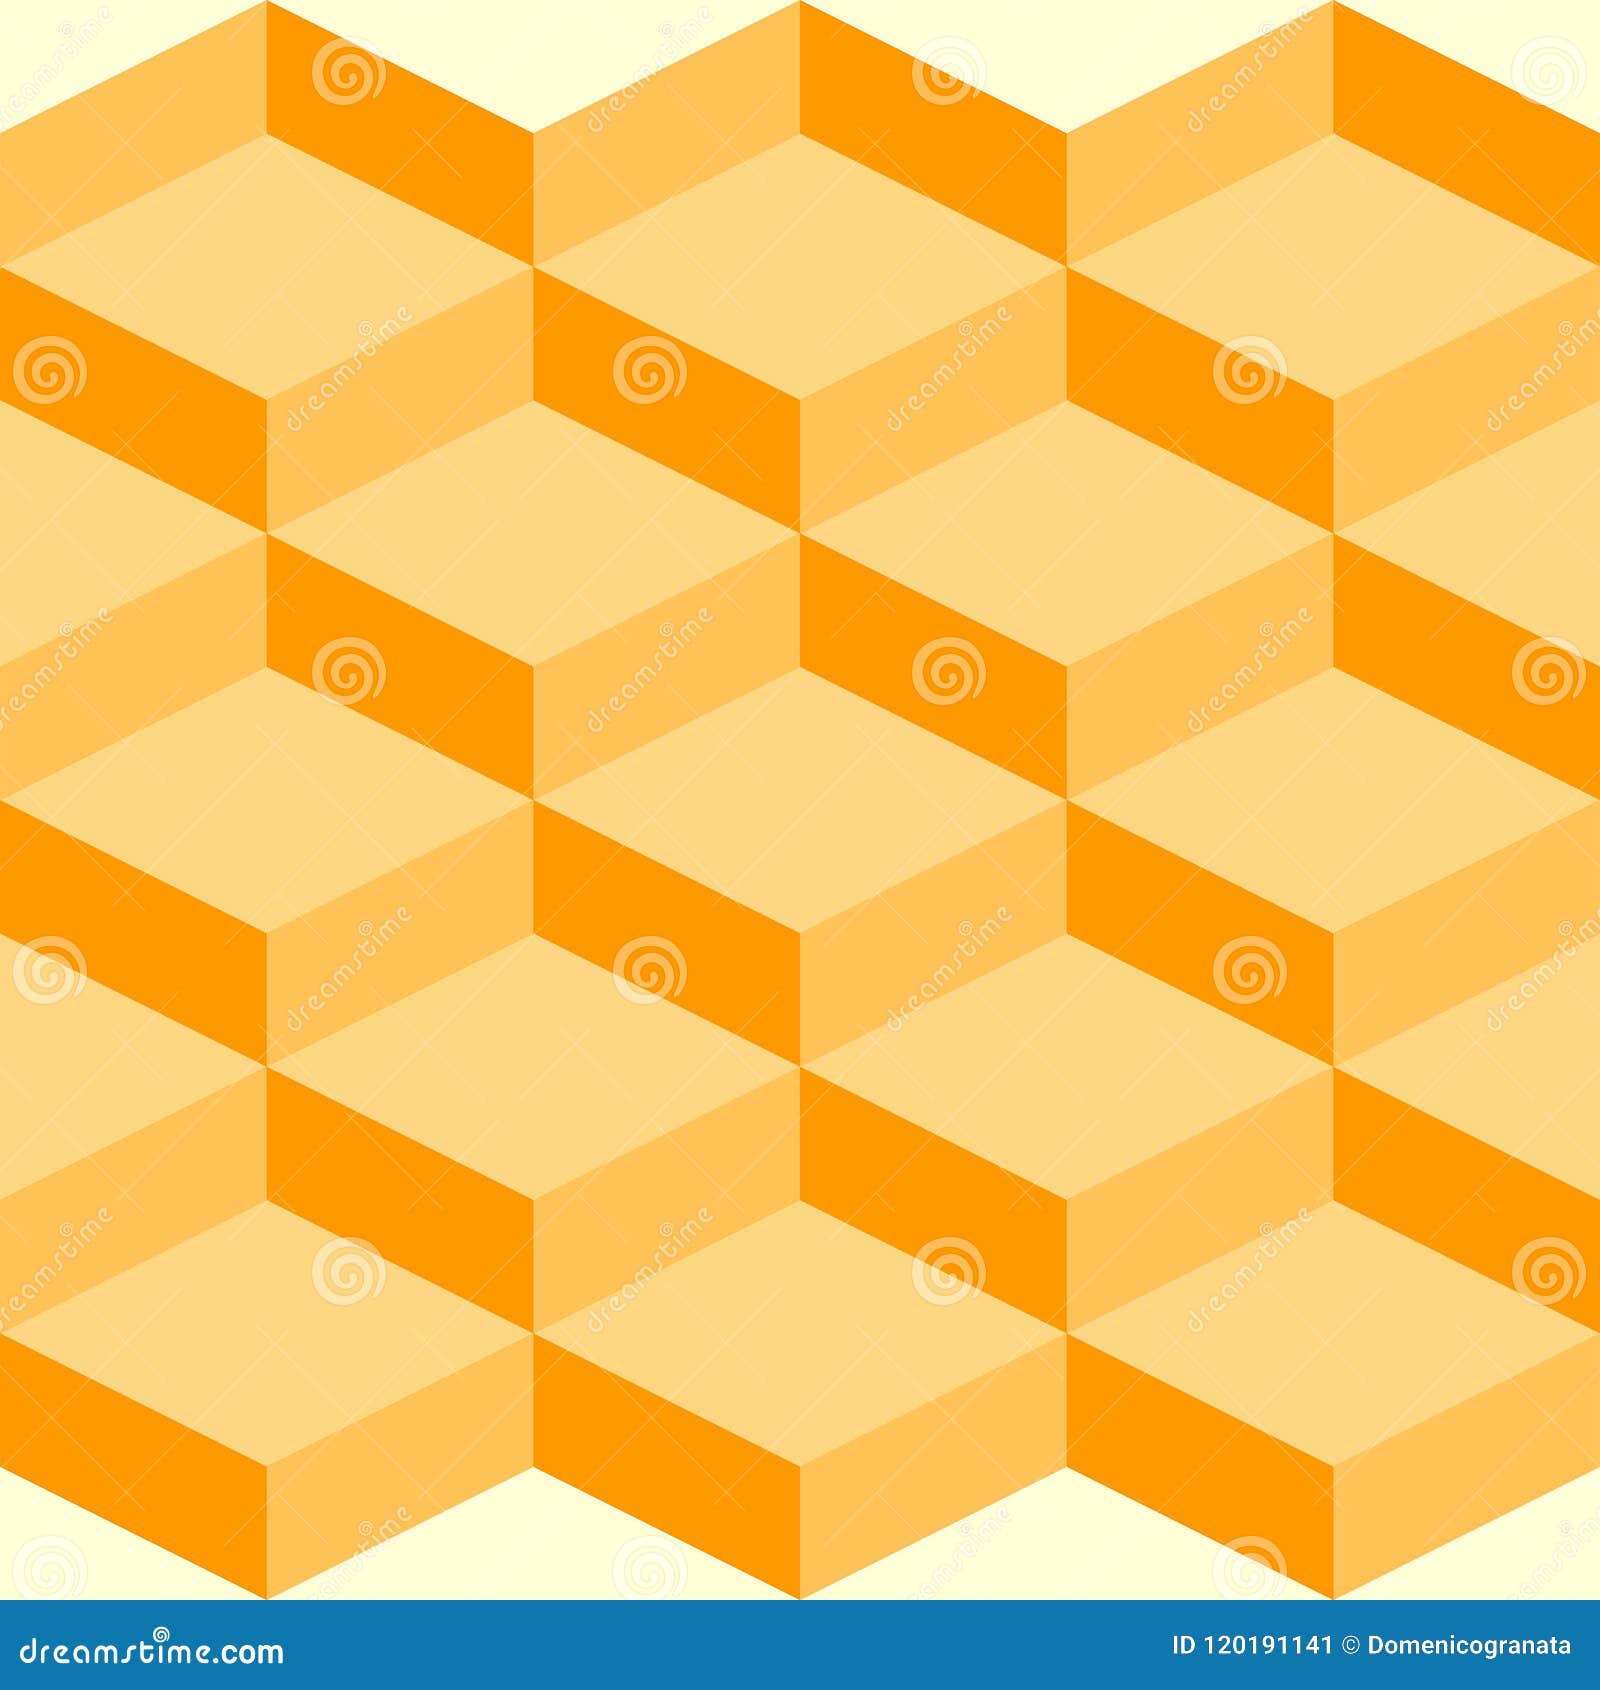 geometric pattern that remember an hive